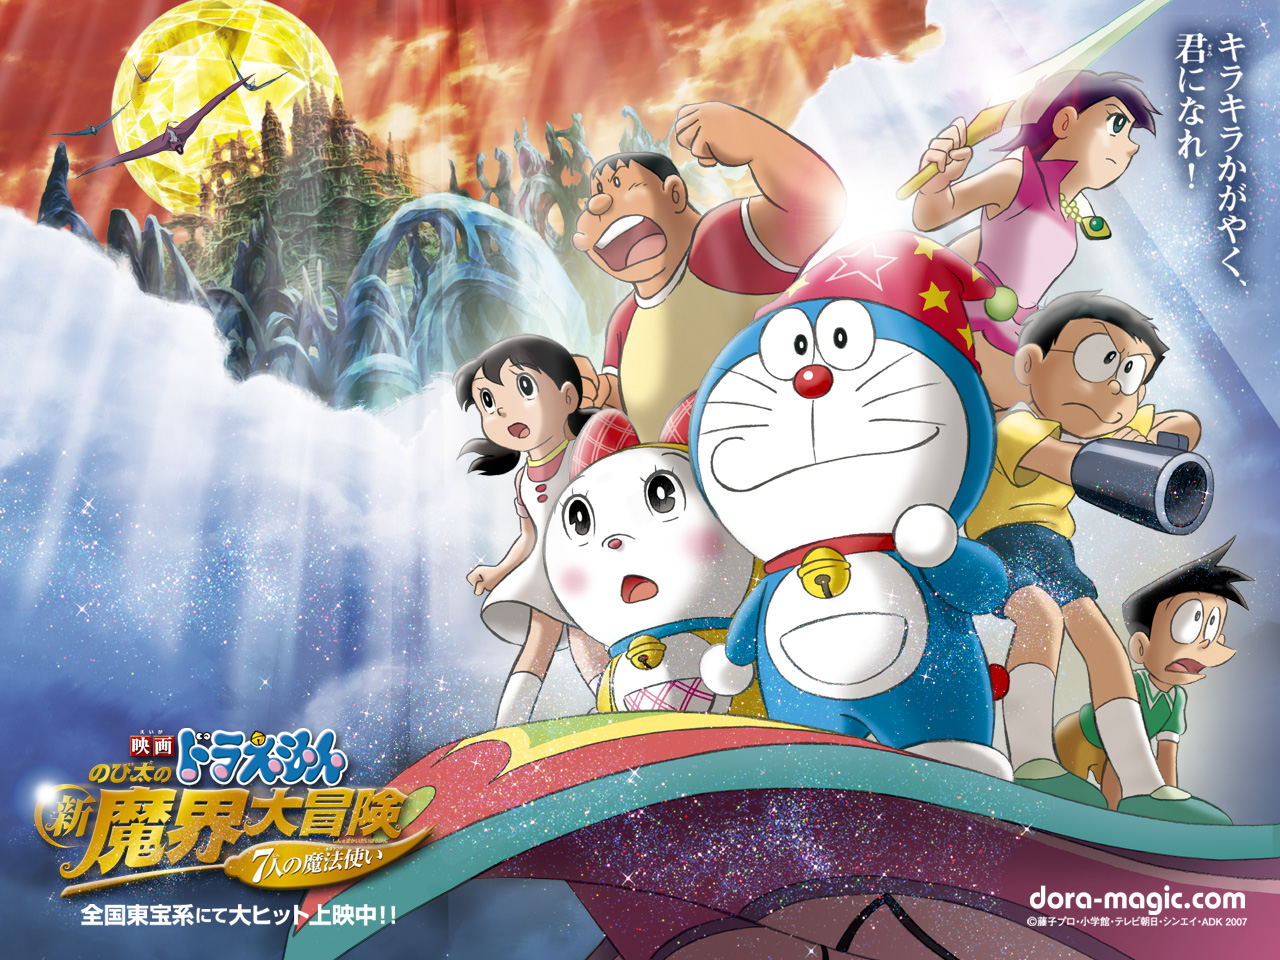 Wallpaper Doraemon classic anime 2880x1800 HD Picture Image